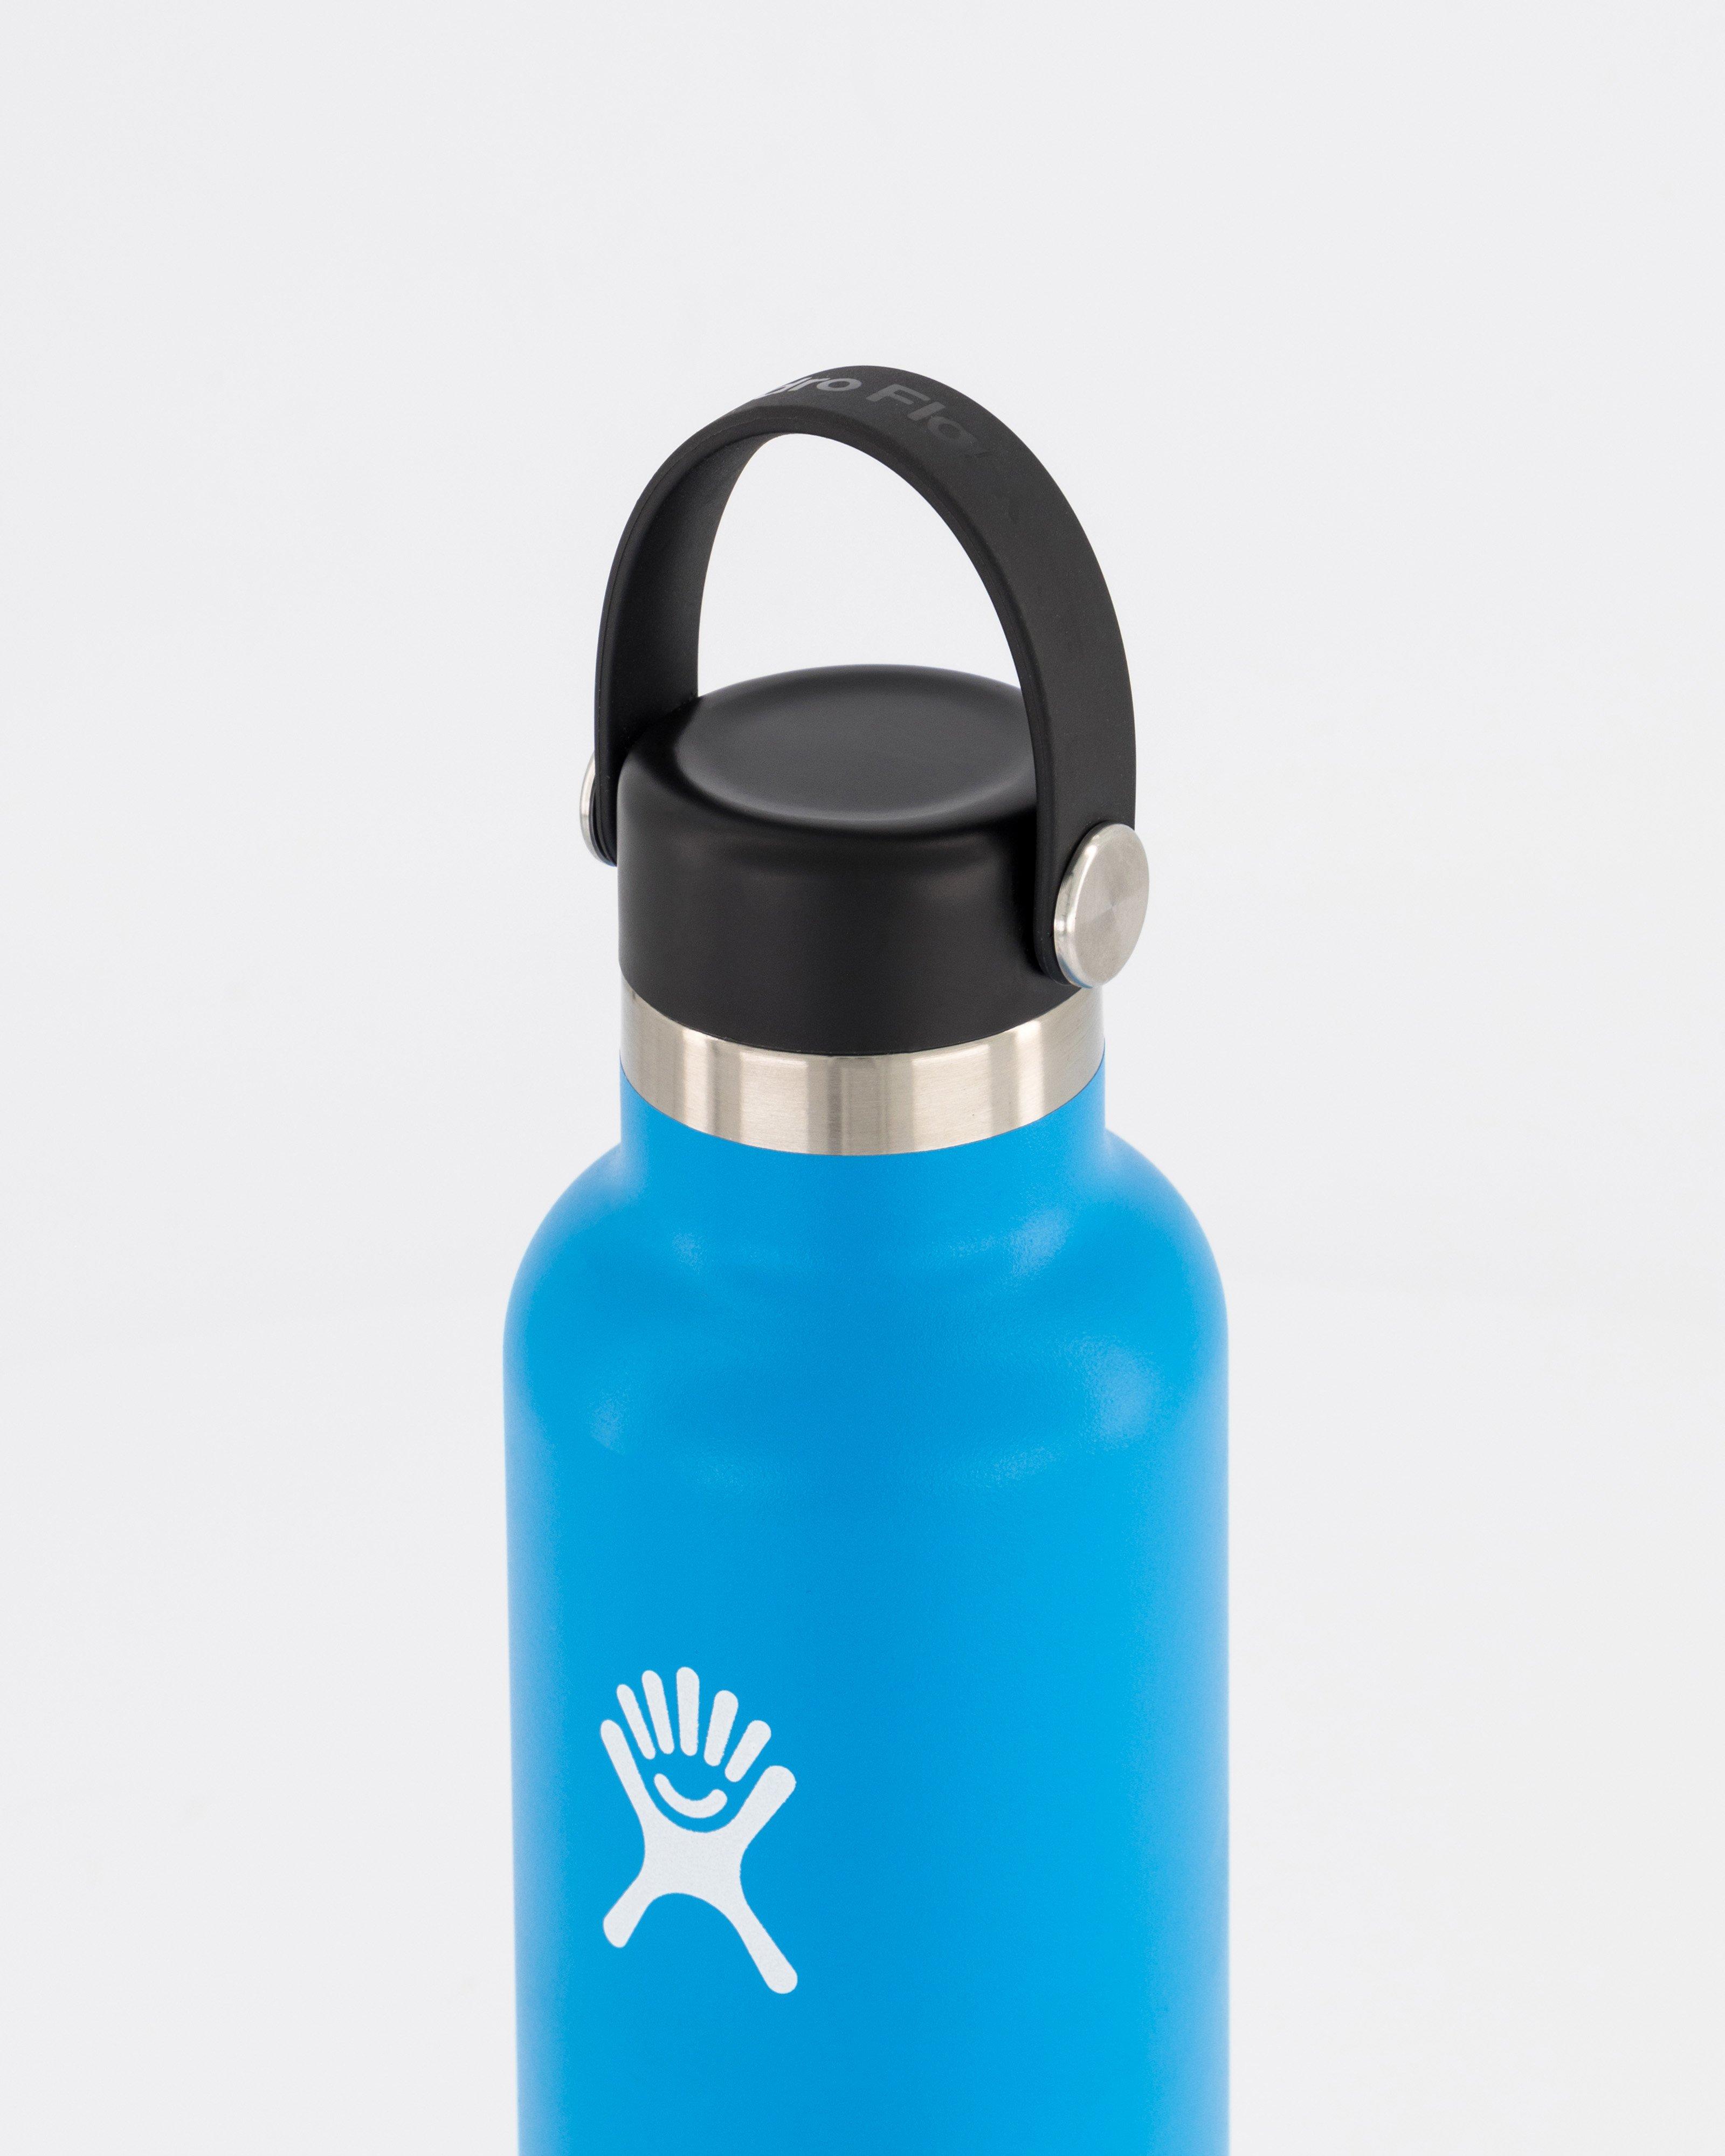 Hydro Flask 532ml Standard Mouth Bottle -  Light Blue